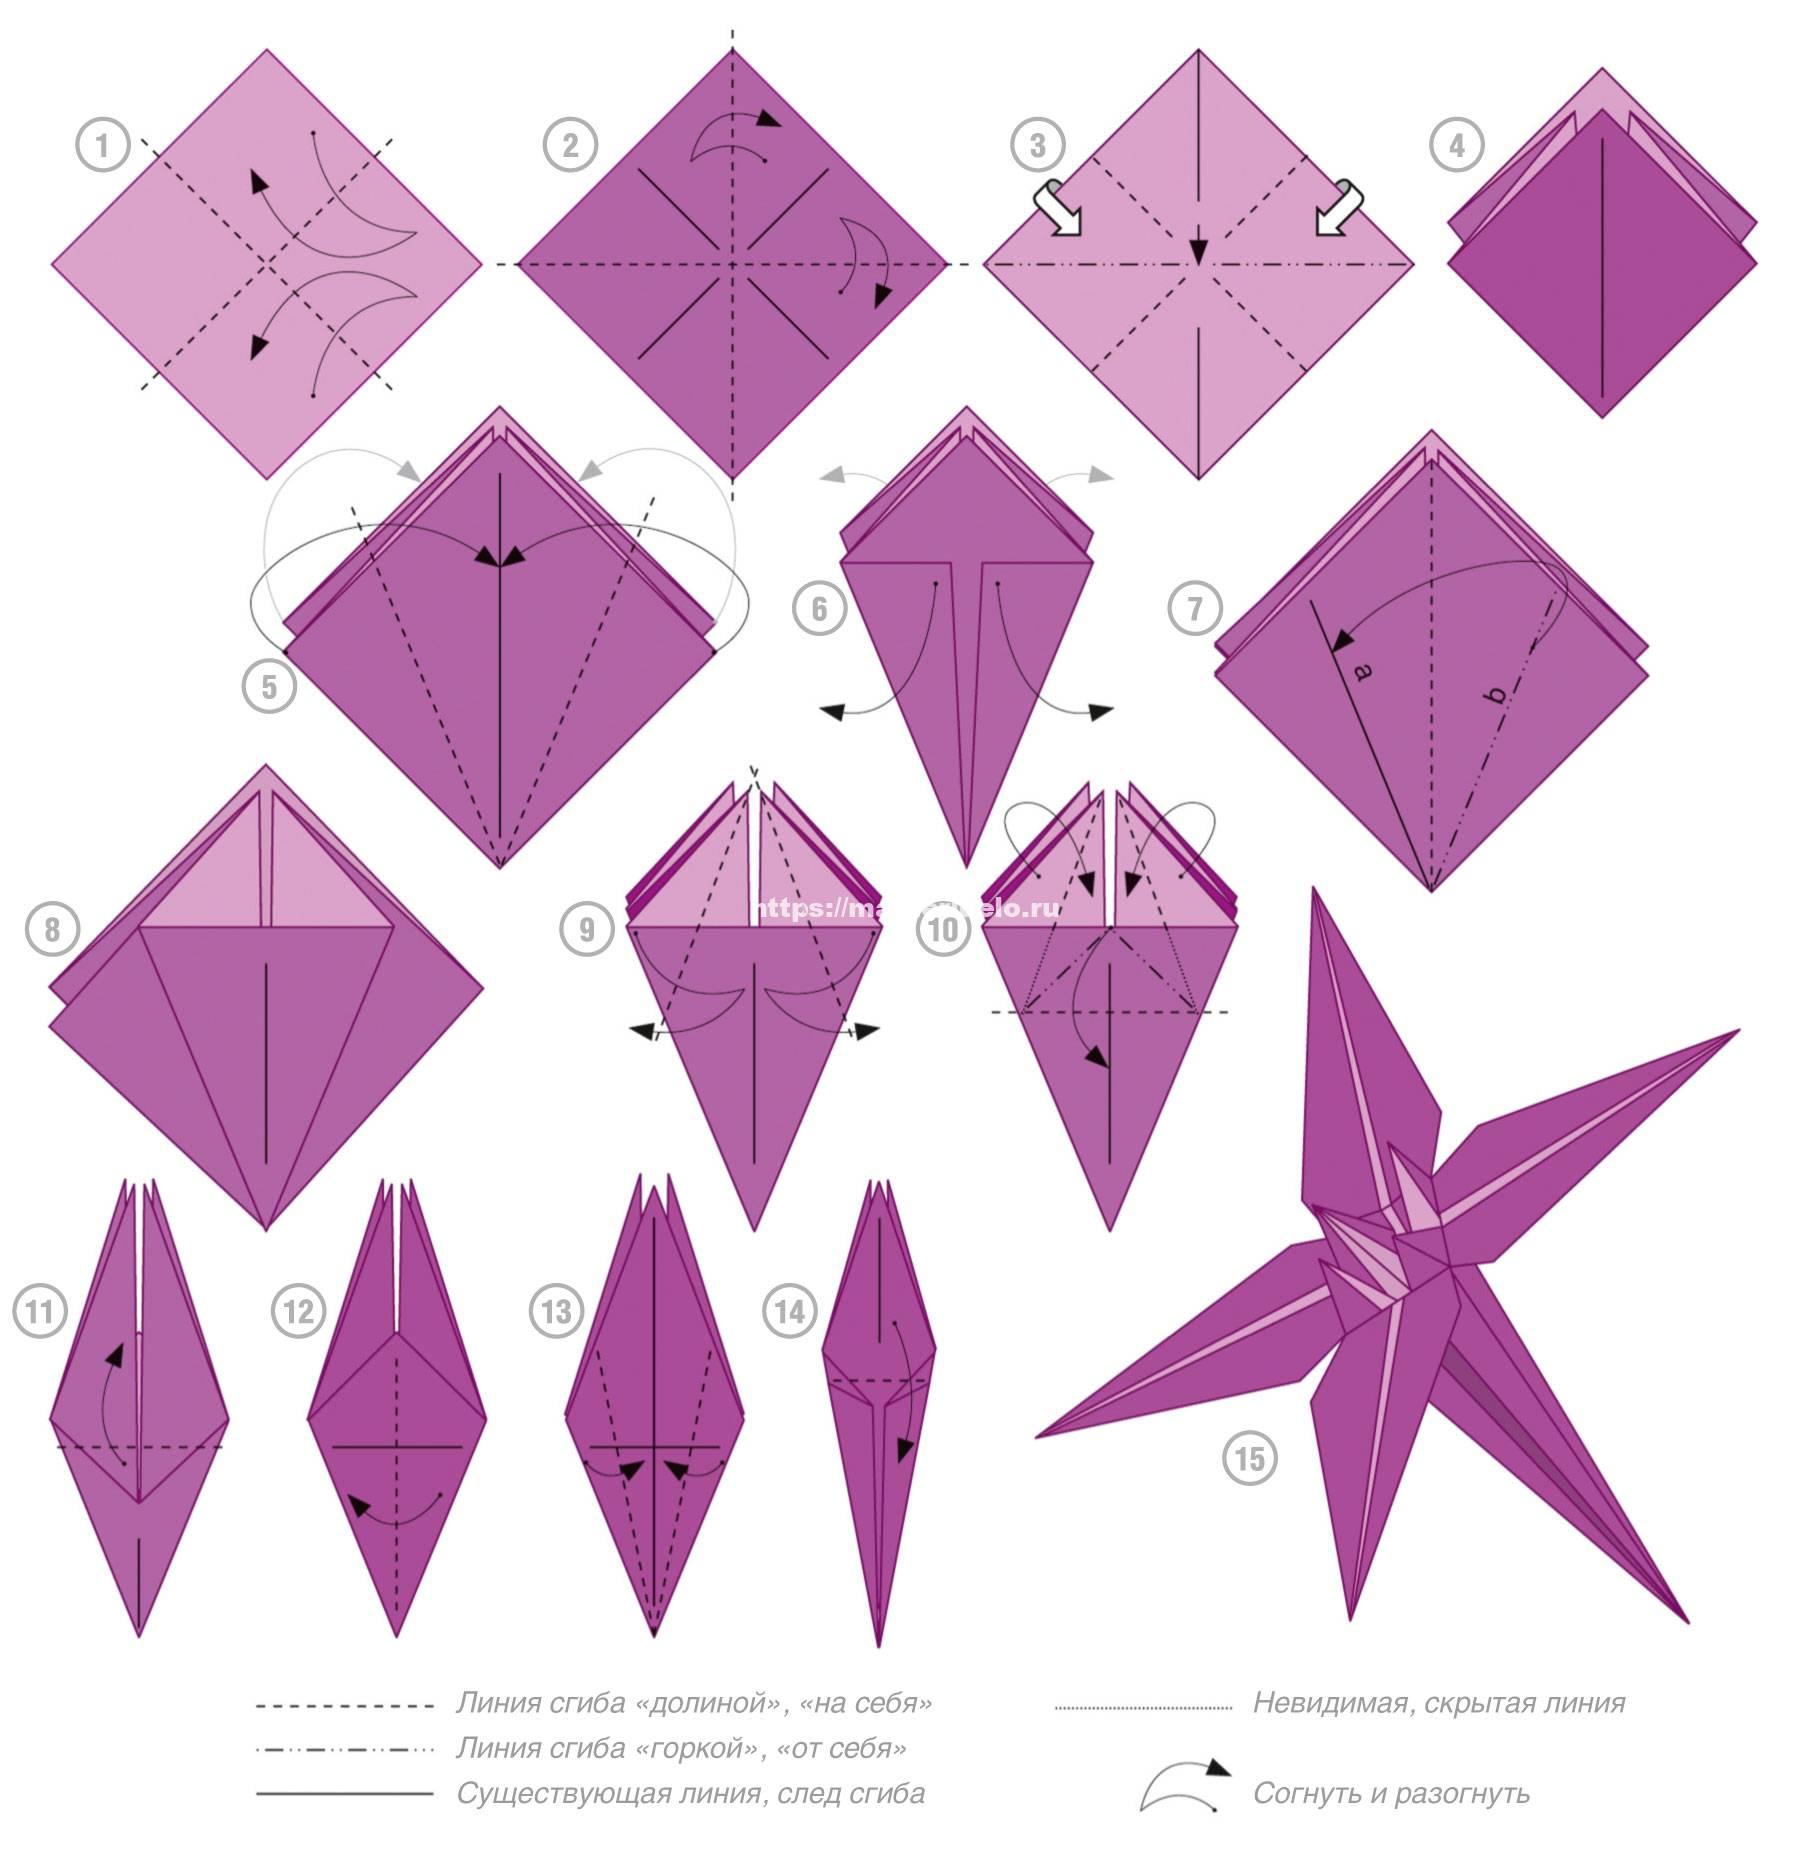 Оригами цветы из бумаги своими руками для начинающих и детей - подробная инструкция от а до я. фото, видео, описание, рекомендации